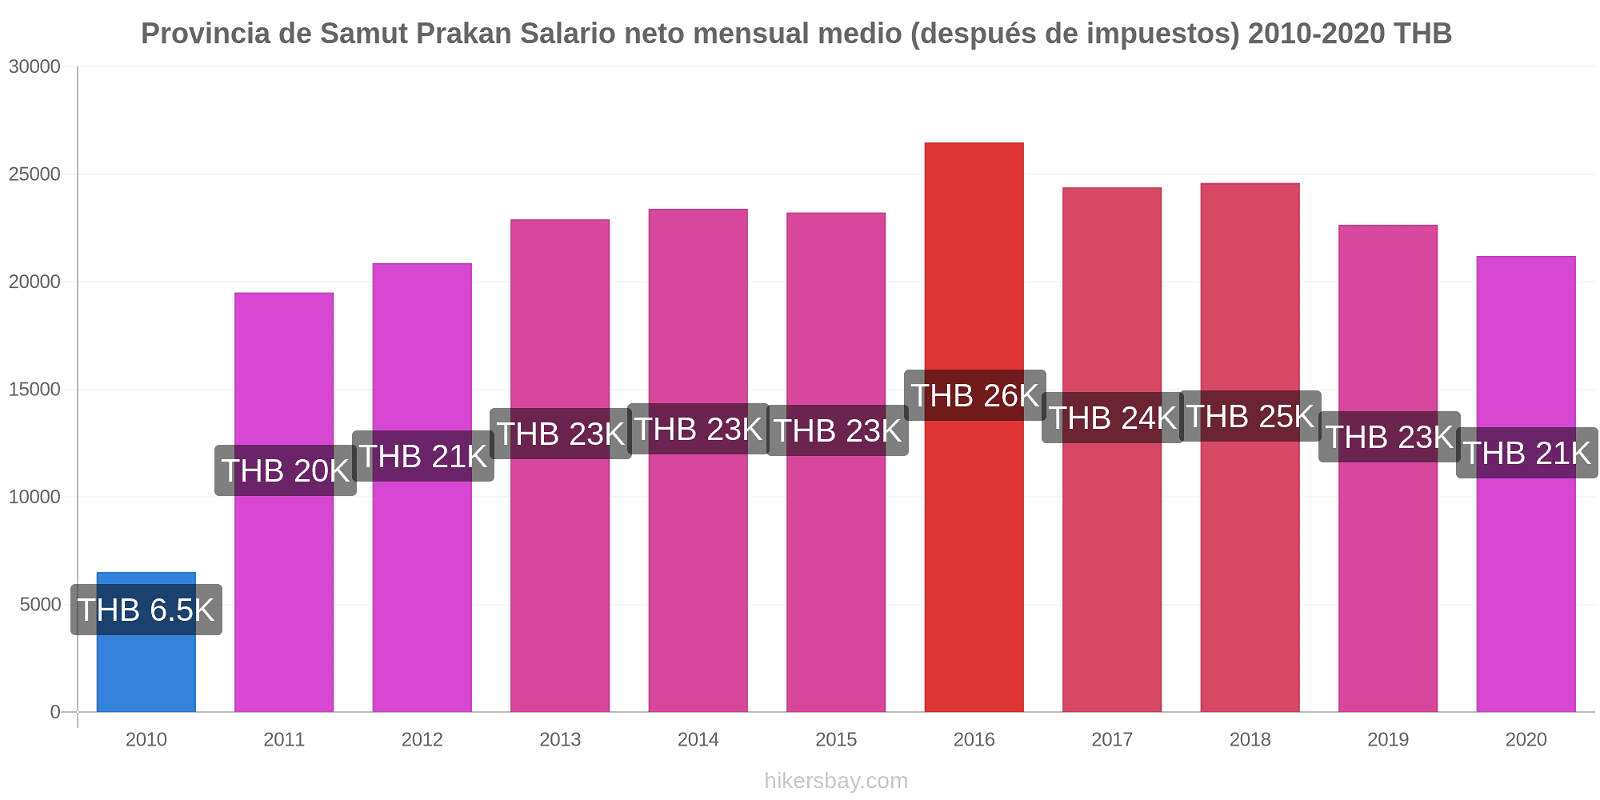 Provincia de Samut Prakan cambios de precios Promedio mensual del salario neto (después de pagar impuestos) hikersbay.com